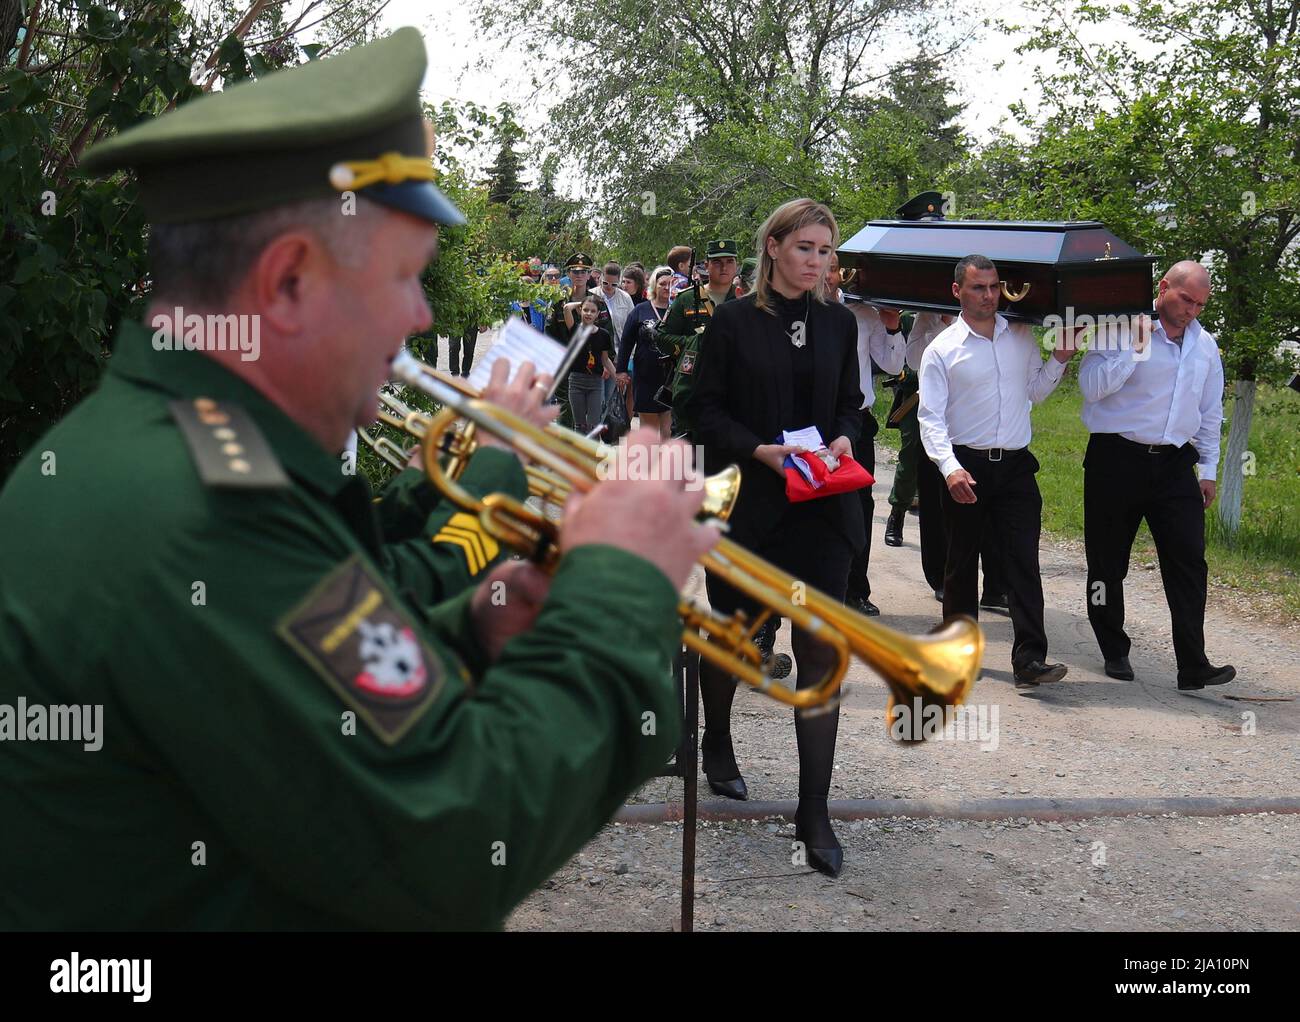 Les pallbearers portent le cercueil de l'aubier de l'armée russe Danil Dumenko, qui a été tué pendant le conflit militaire en Ukraine, lors de ses funérailles dans un cimetière de Volzhsky, Russie le 26 mai 2022. PHOTOGRAPHE REUTERS/REUTERS Banque D'Images